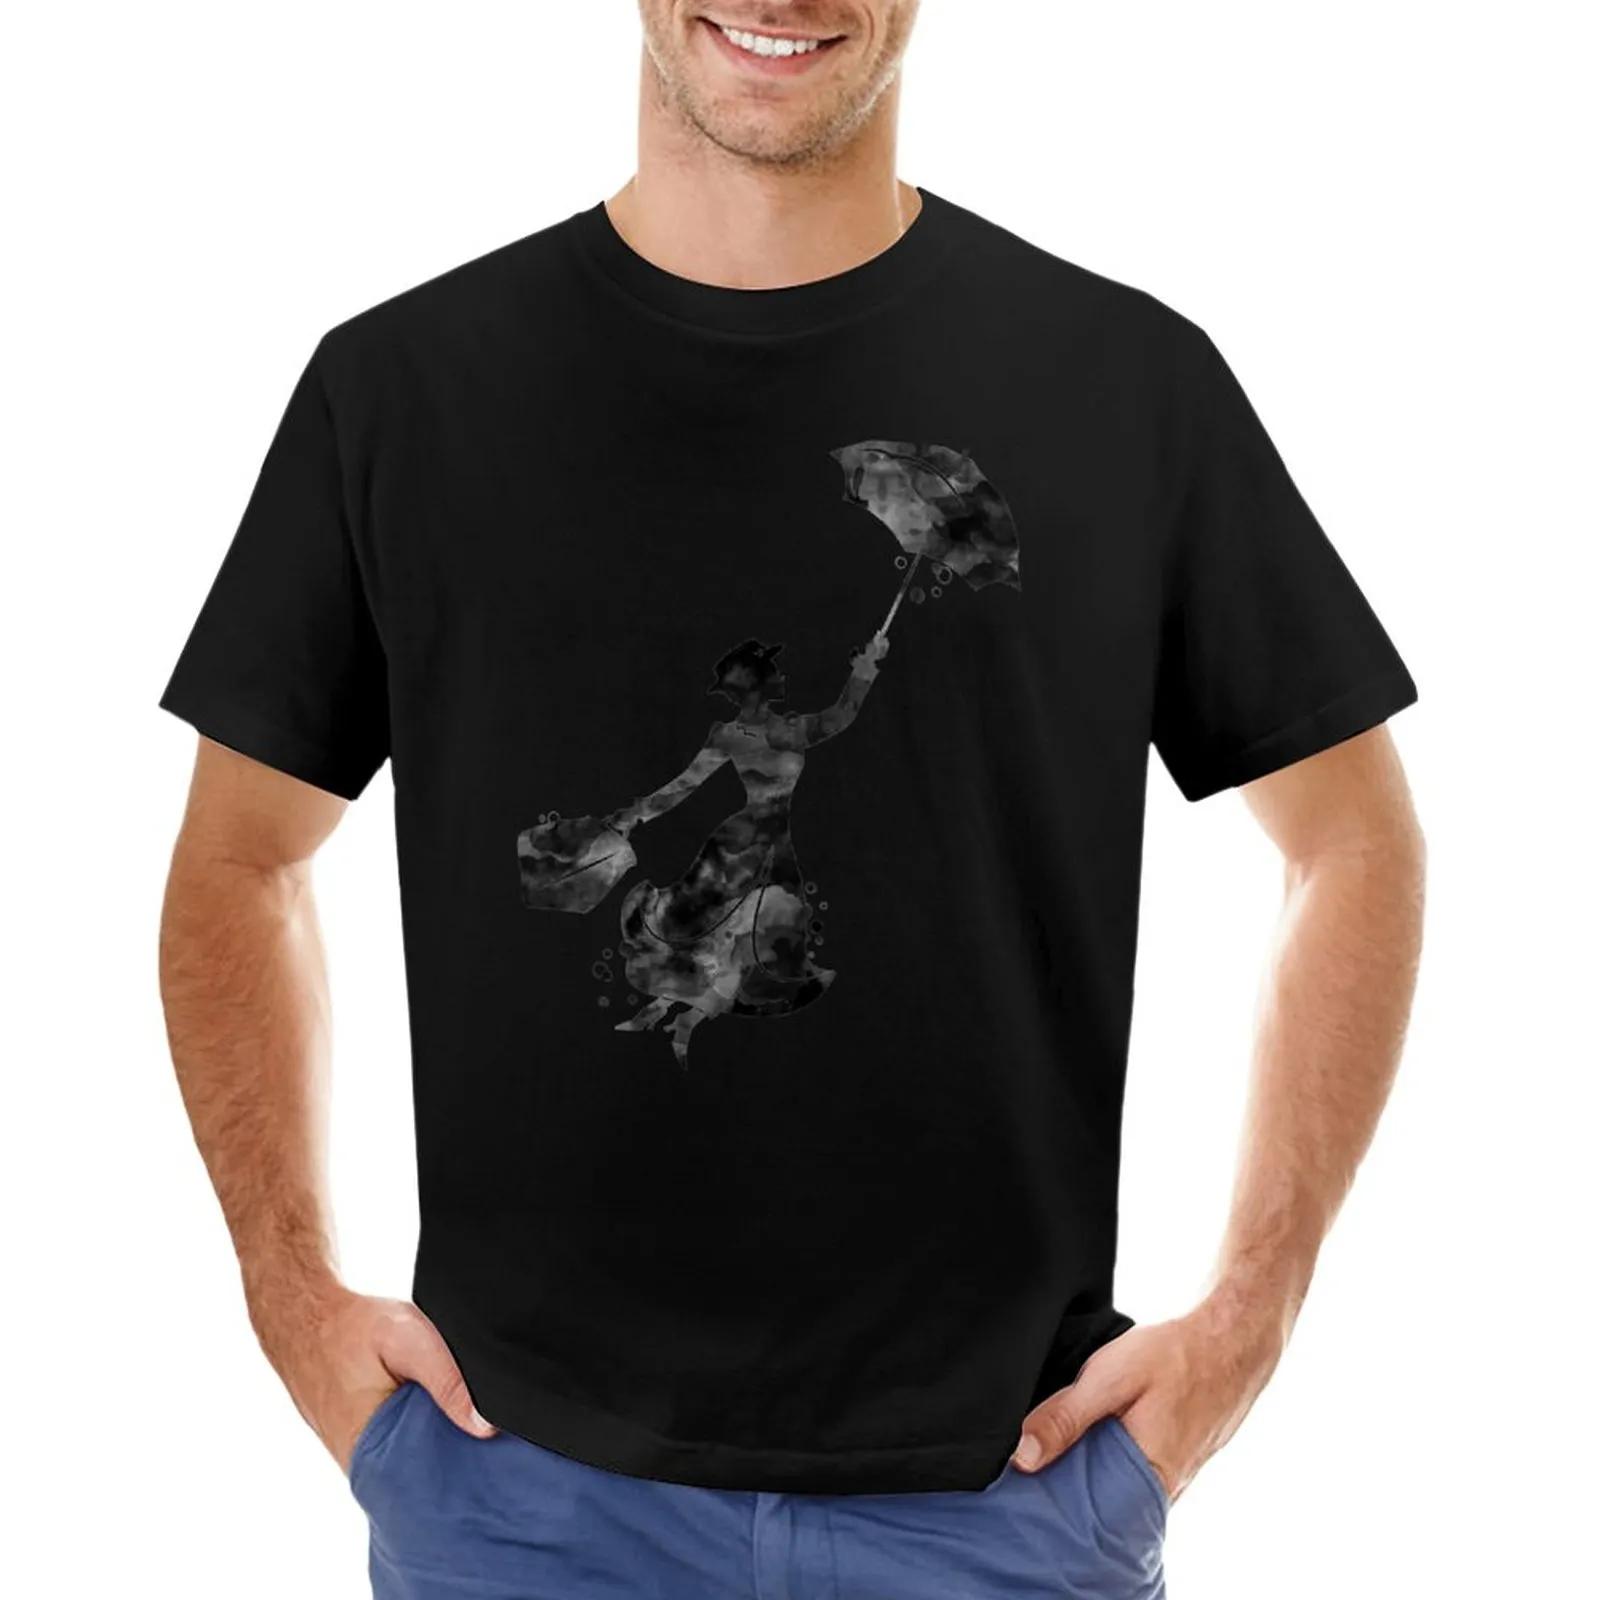 Mary Poppins 남성용 흰색 티셔츠, 그래픽 티셔츠, 스웨트 셔츠, 면 티셔츠